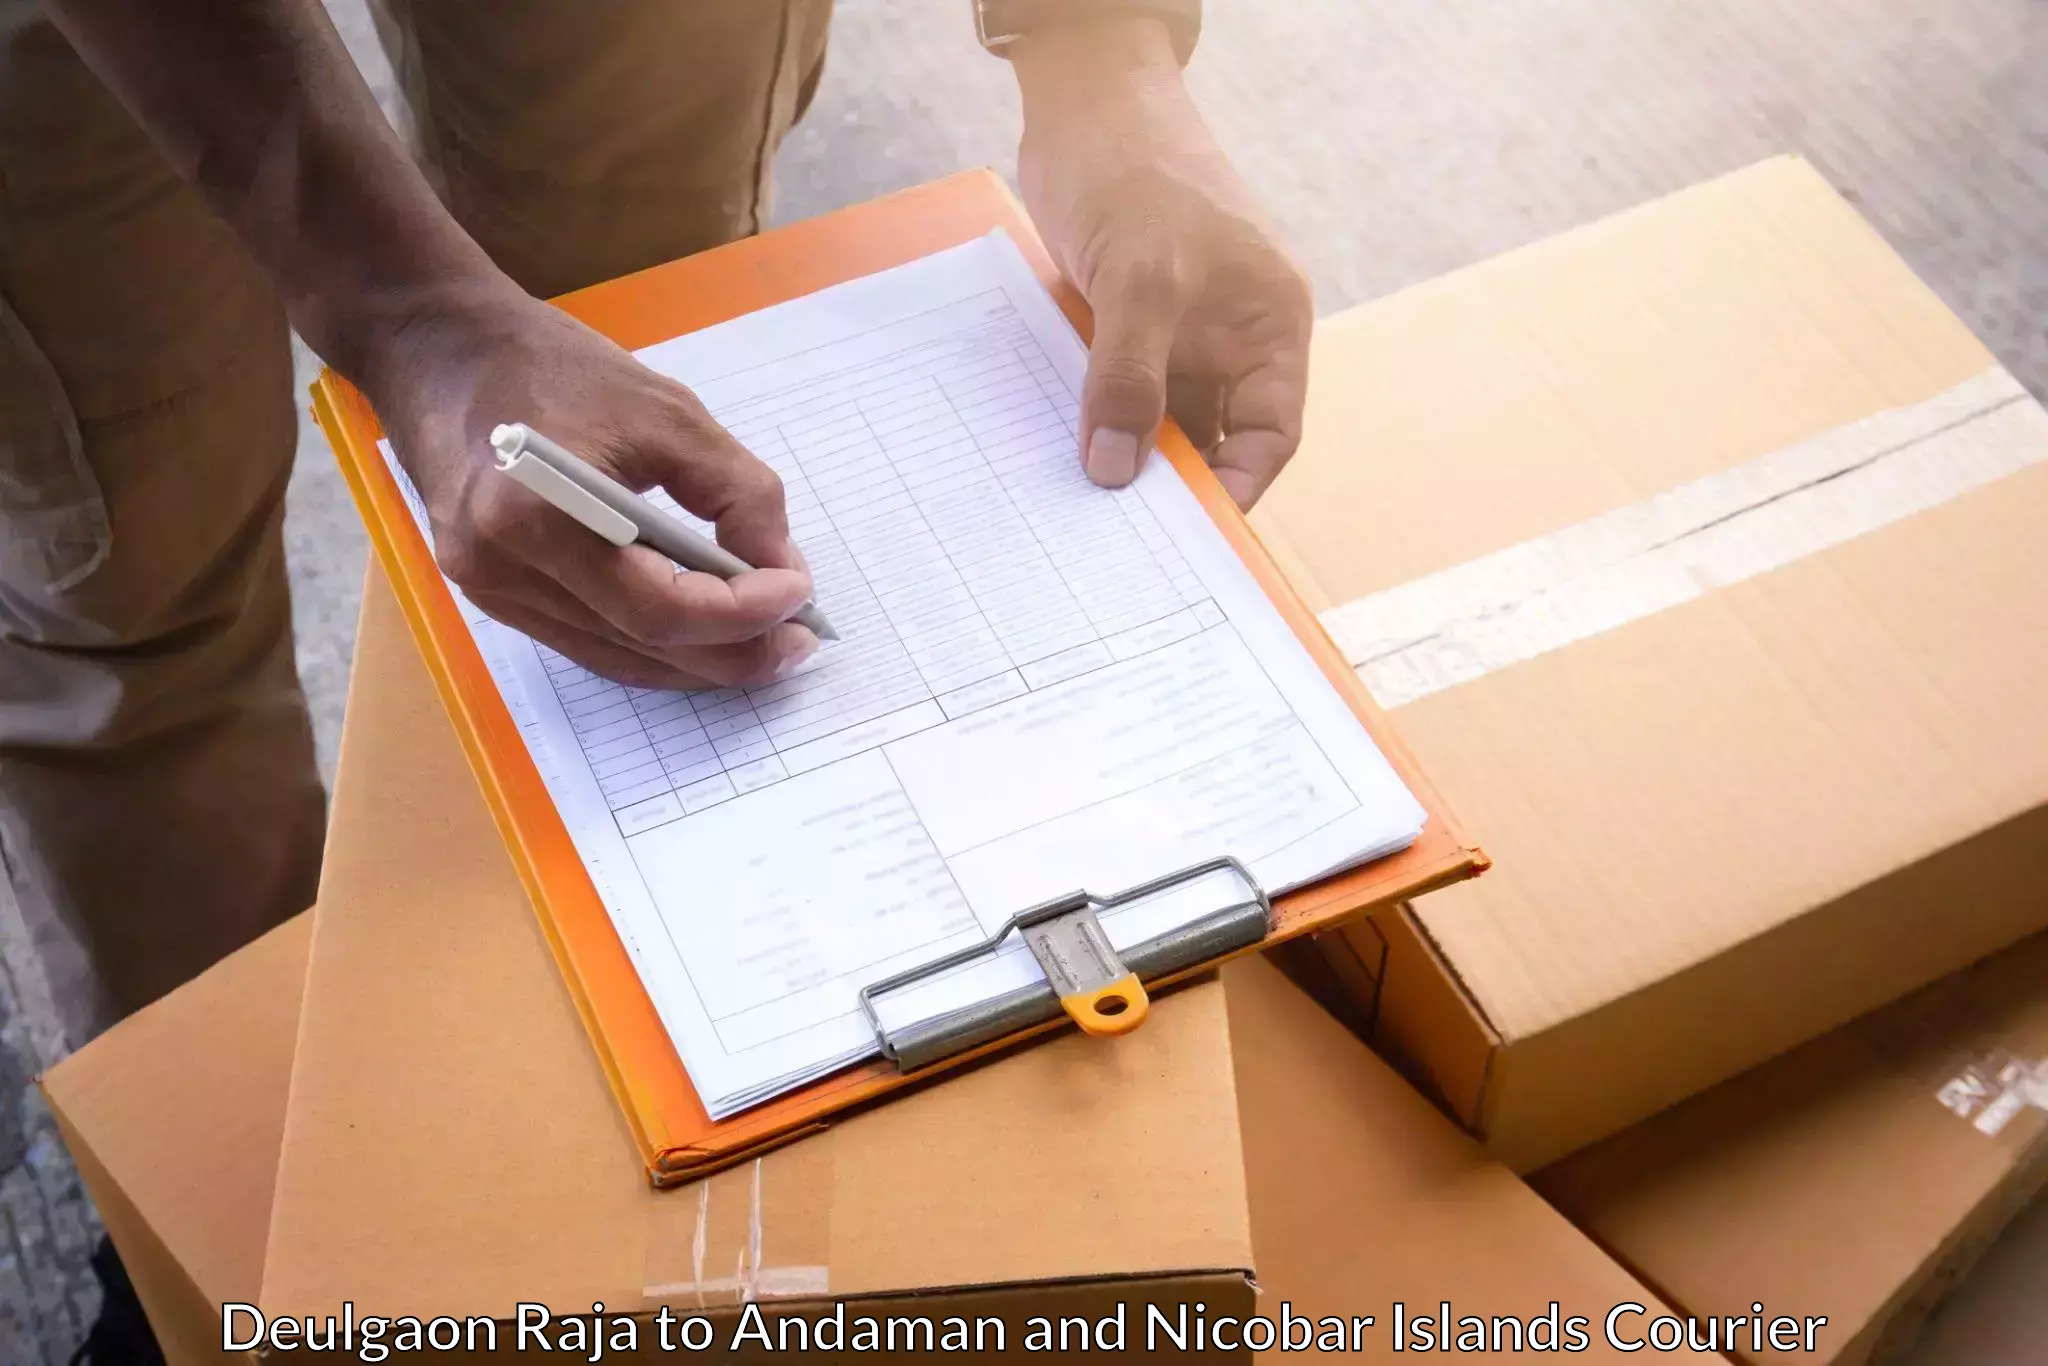 Express postal services Deulgaon Raja to Andaman and Nicobar Islands